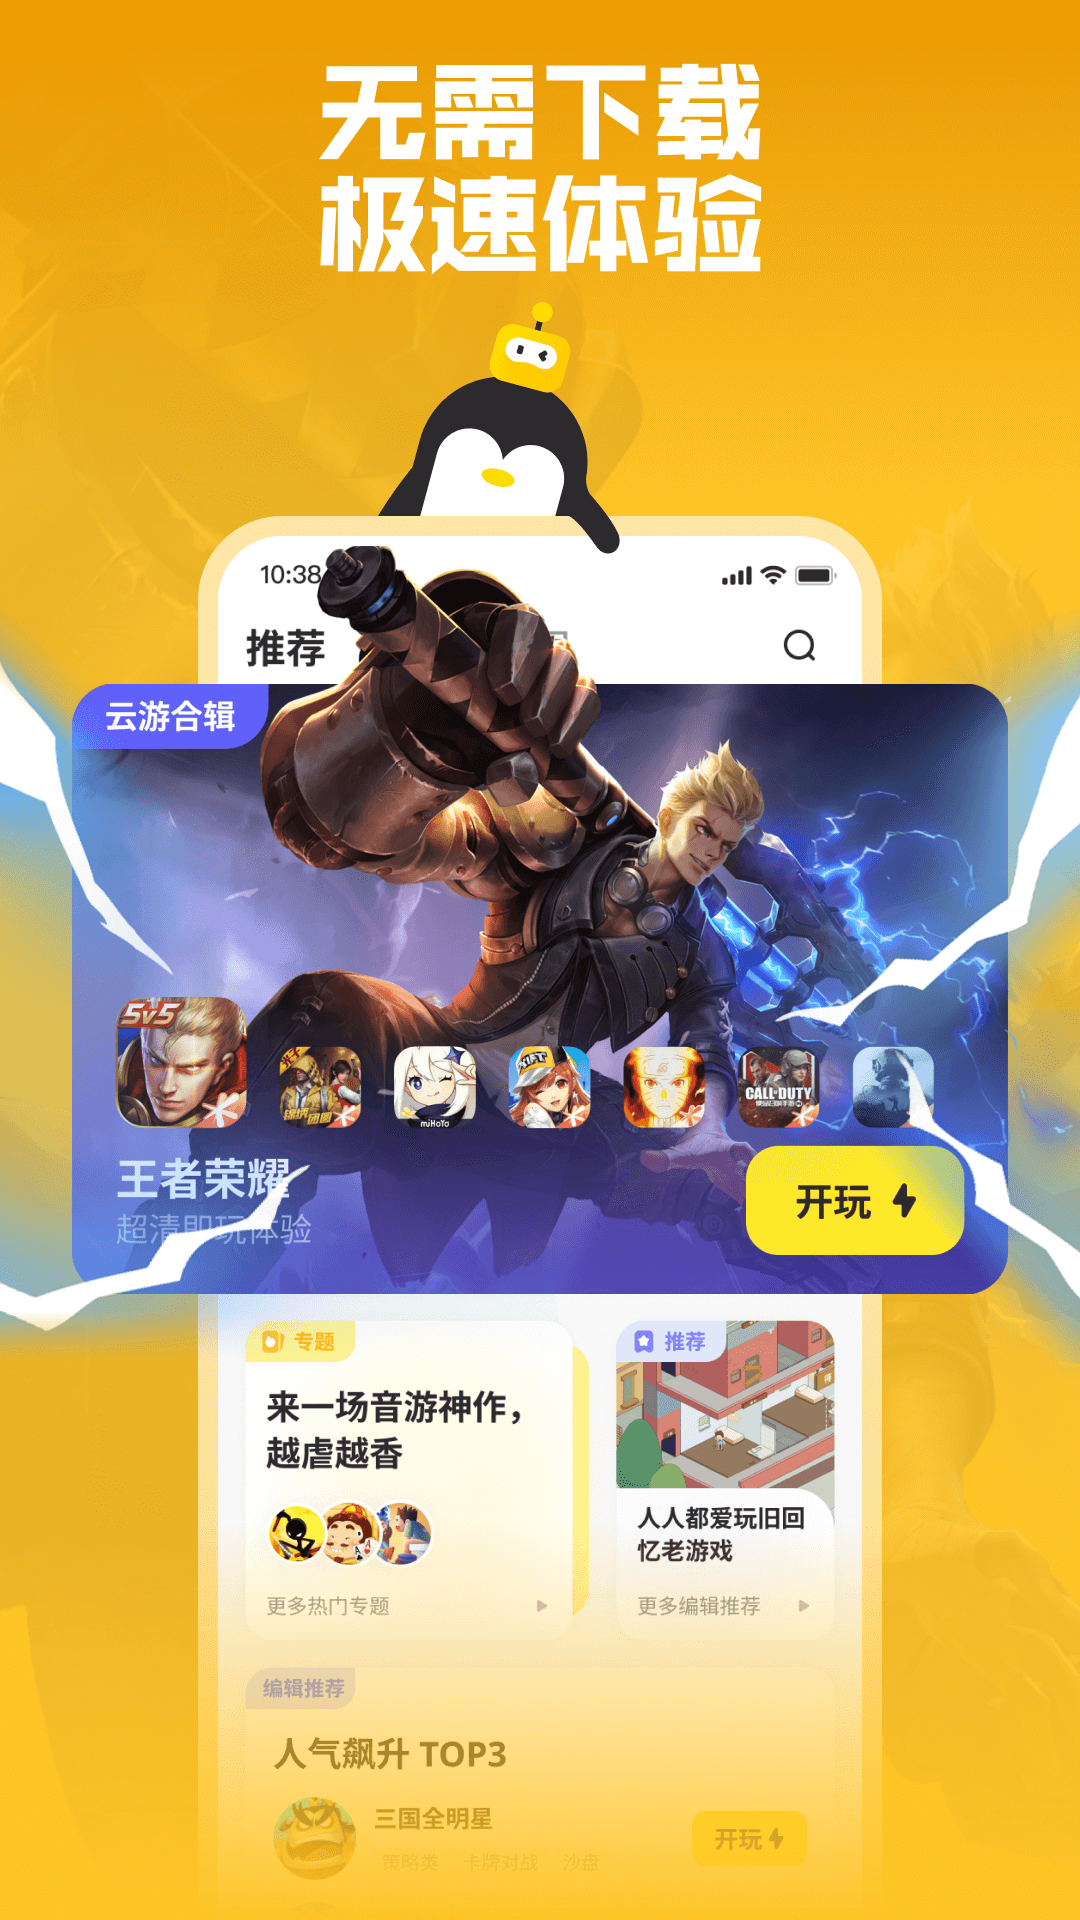 鹅盒云游戏免费版下载无限时长-鹅盒云游戏appv1.5.0 官方正版